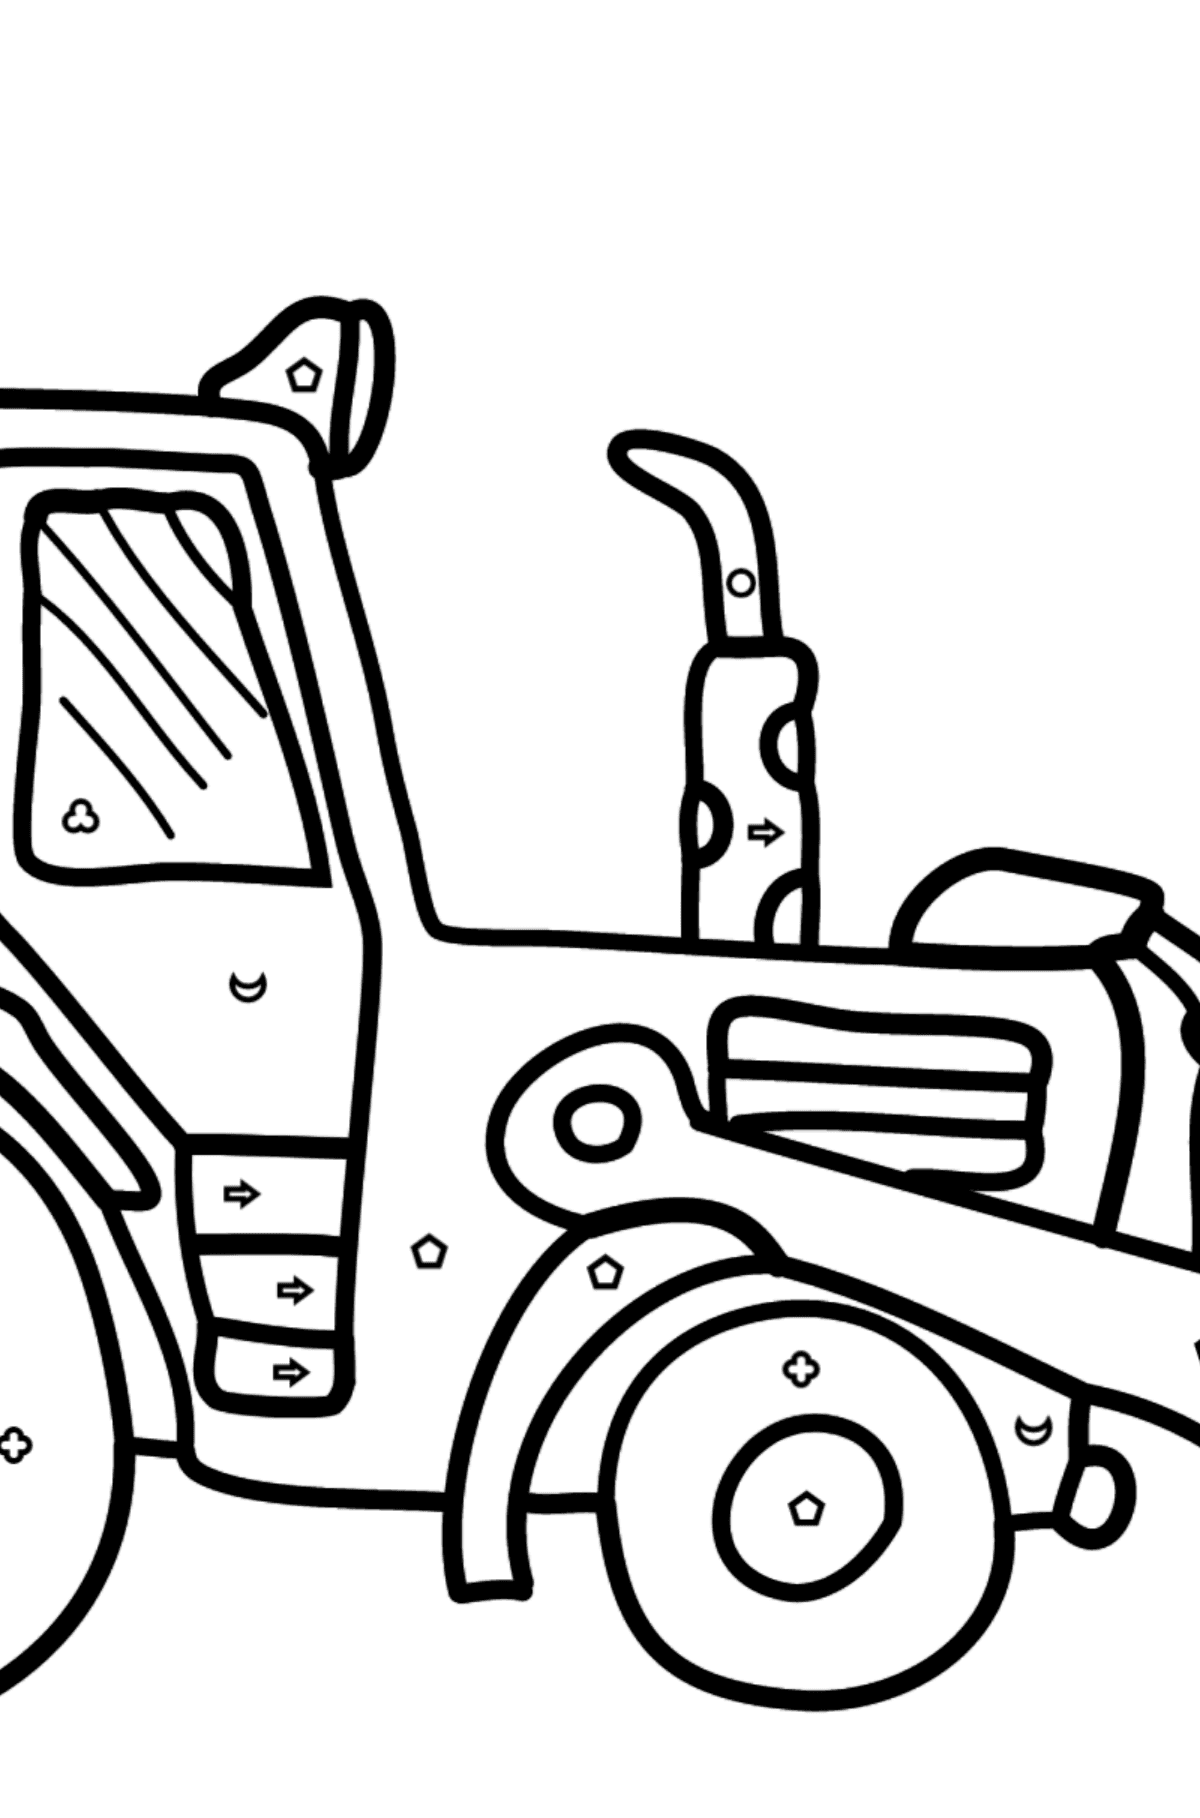 Dibujo para Colorear - Un Tractor Amarillo - Colorear por Formas Geométricas para Niños